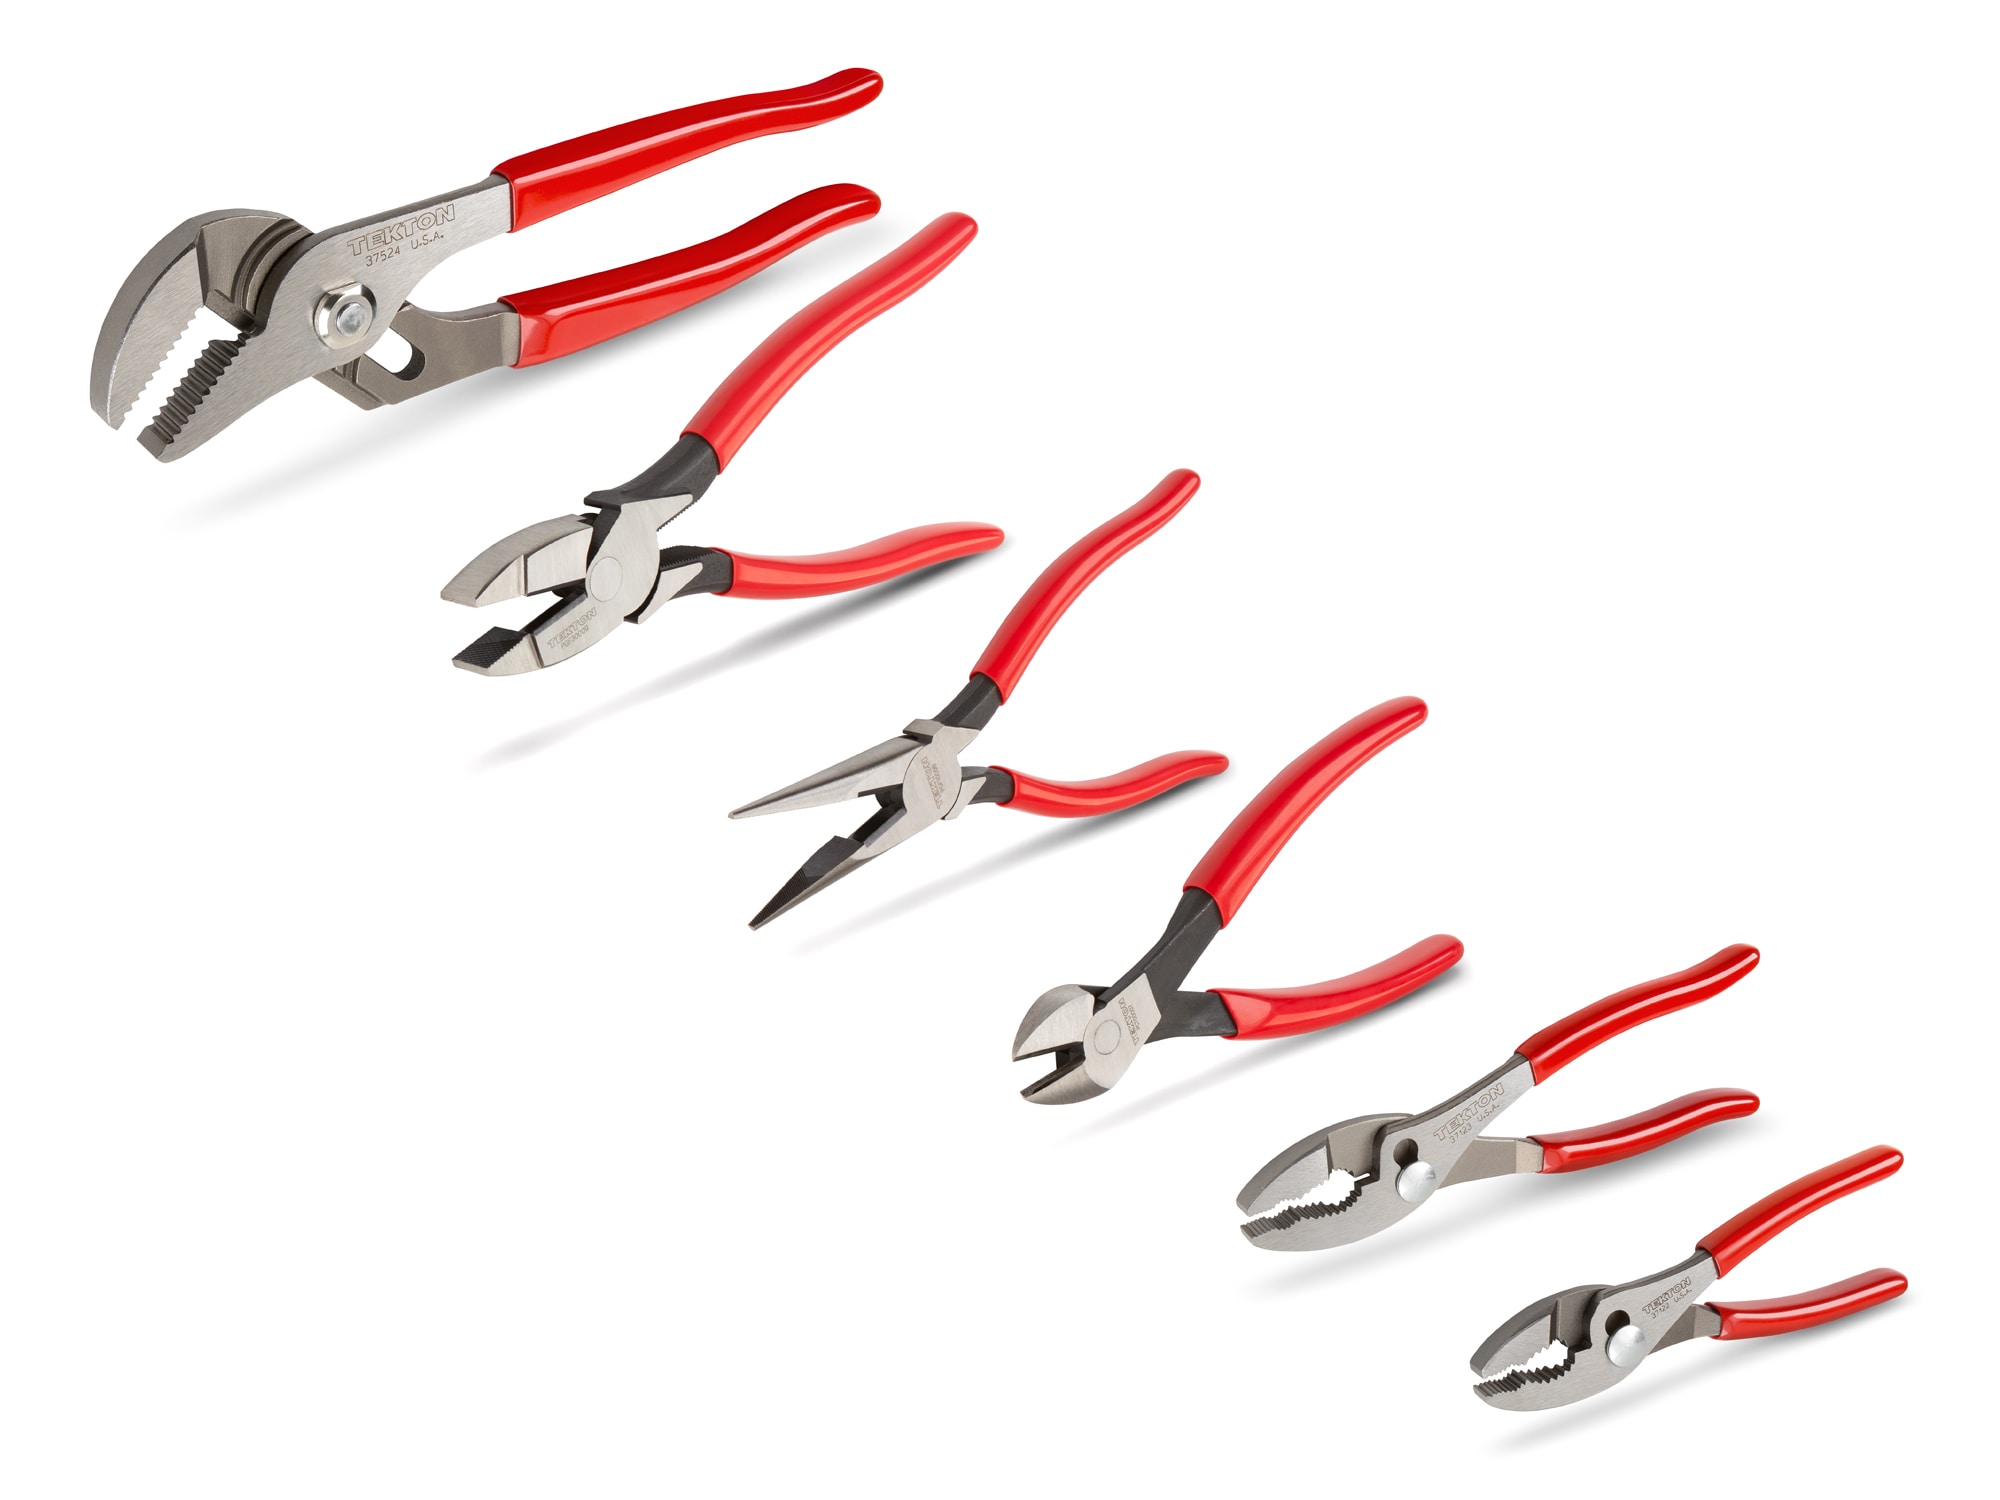 5pc Mini Pliers Set Precision Pliers Linesman Bent Needle Nose Pliers w/  Pouch